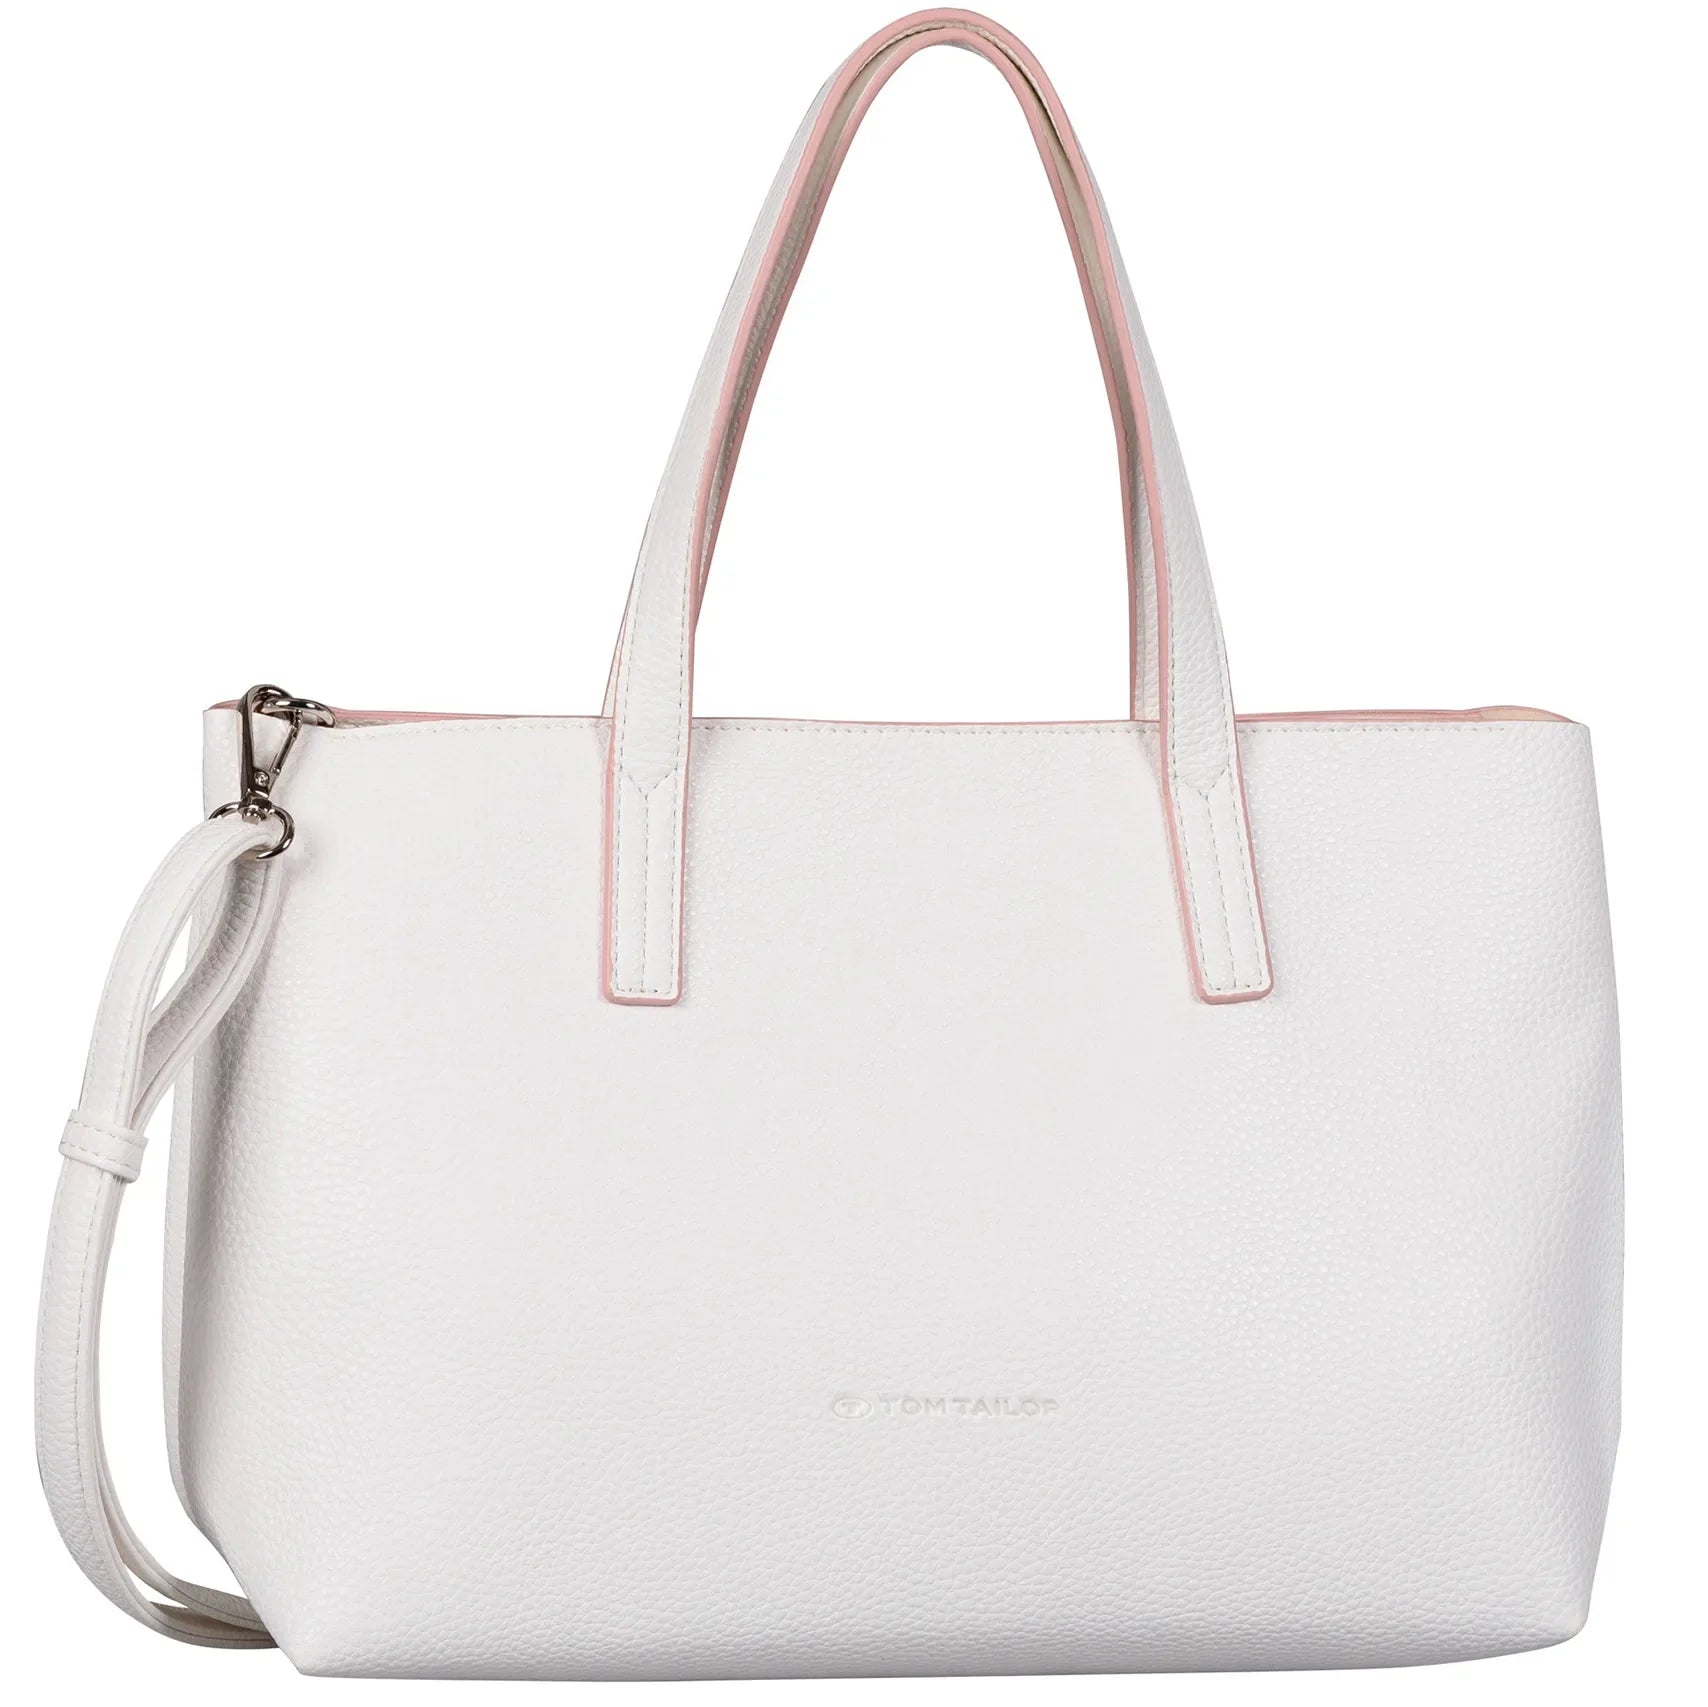 Tom Tailor Bags Marla Zip Shopper 34 cm - white